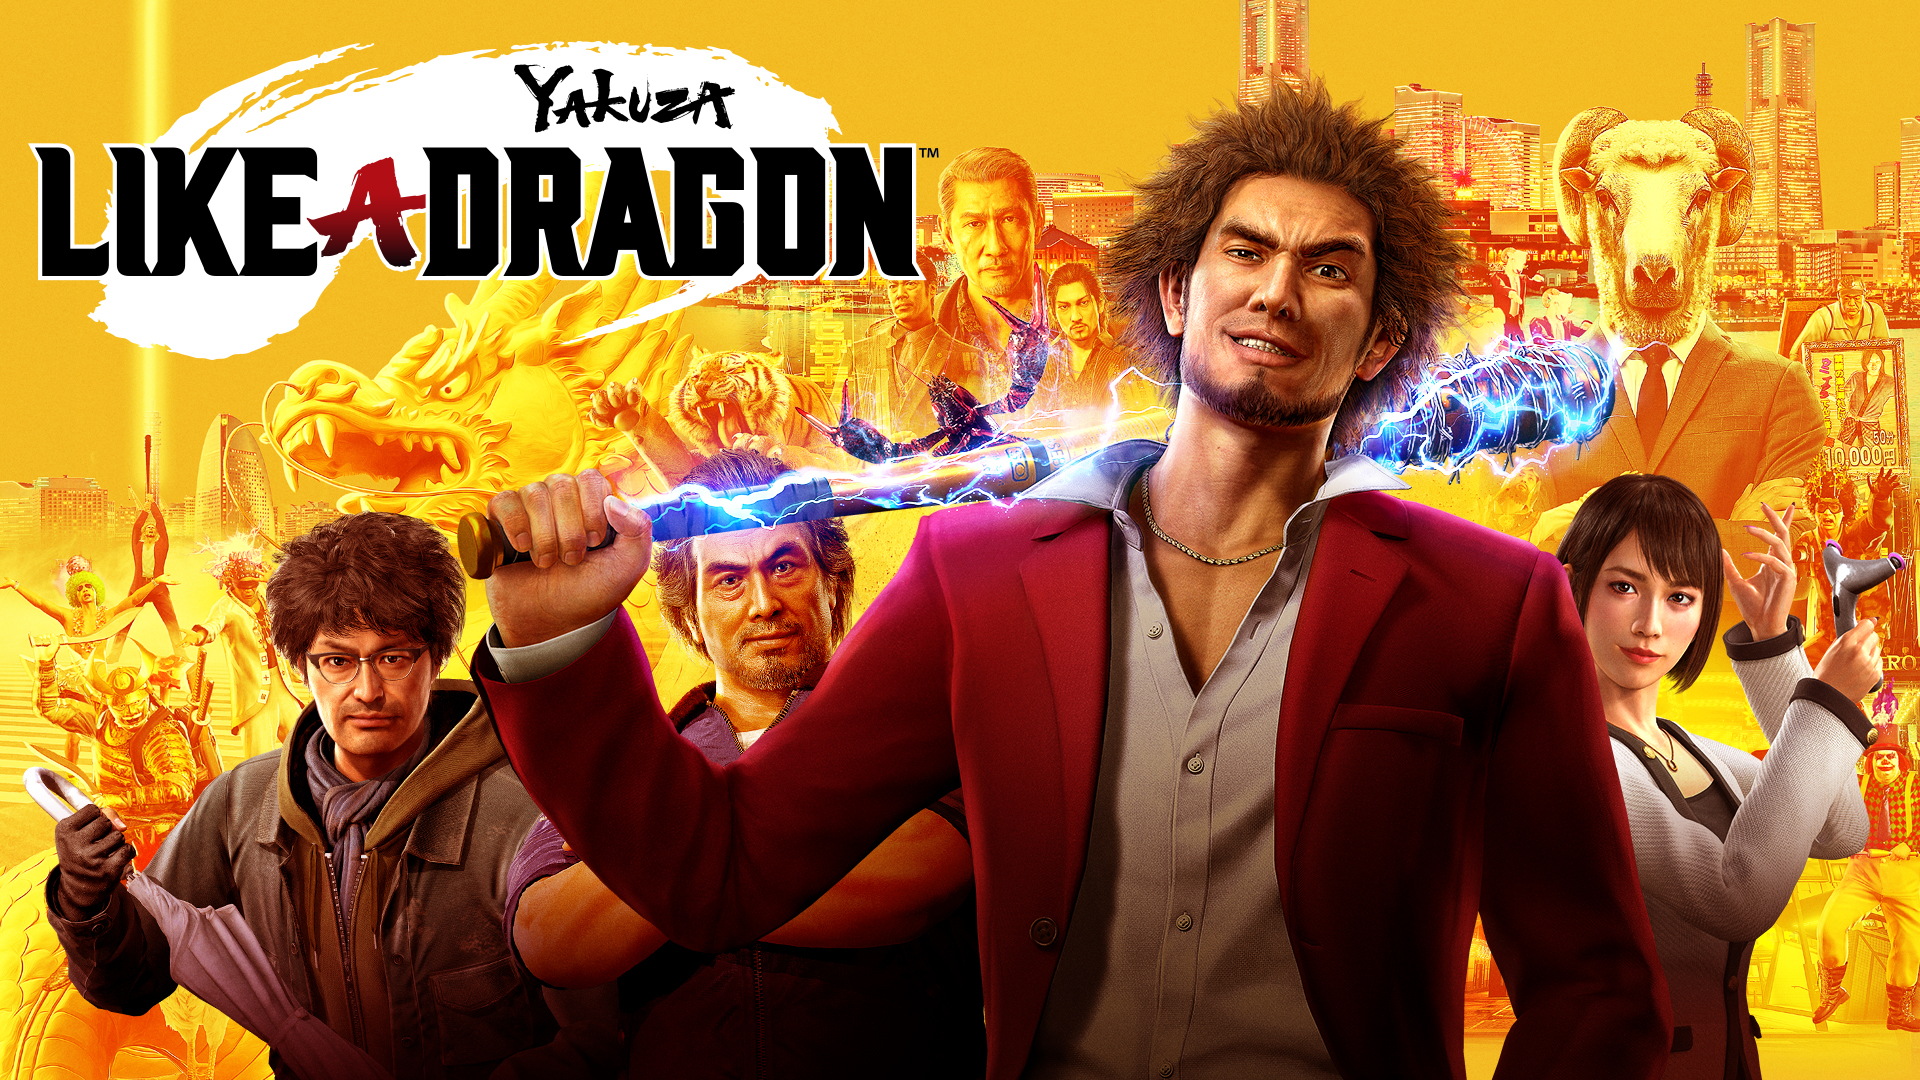 Yakuza like a dragon Xbox series x X